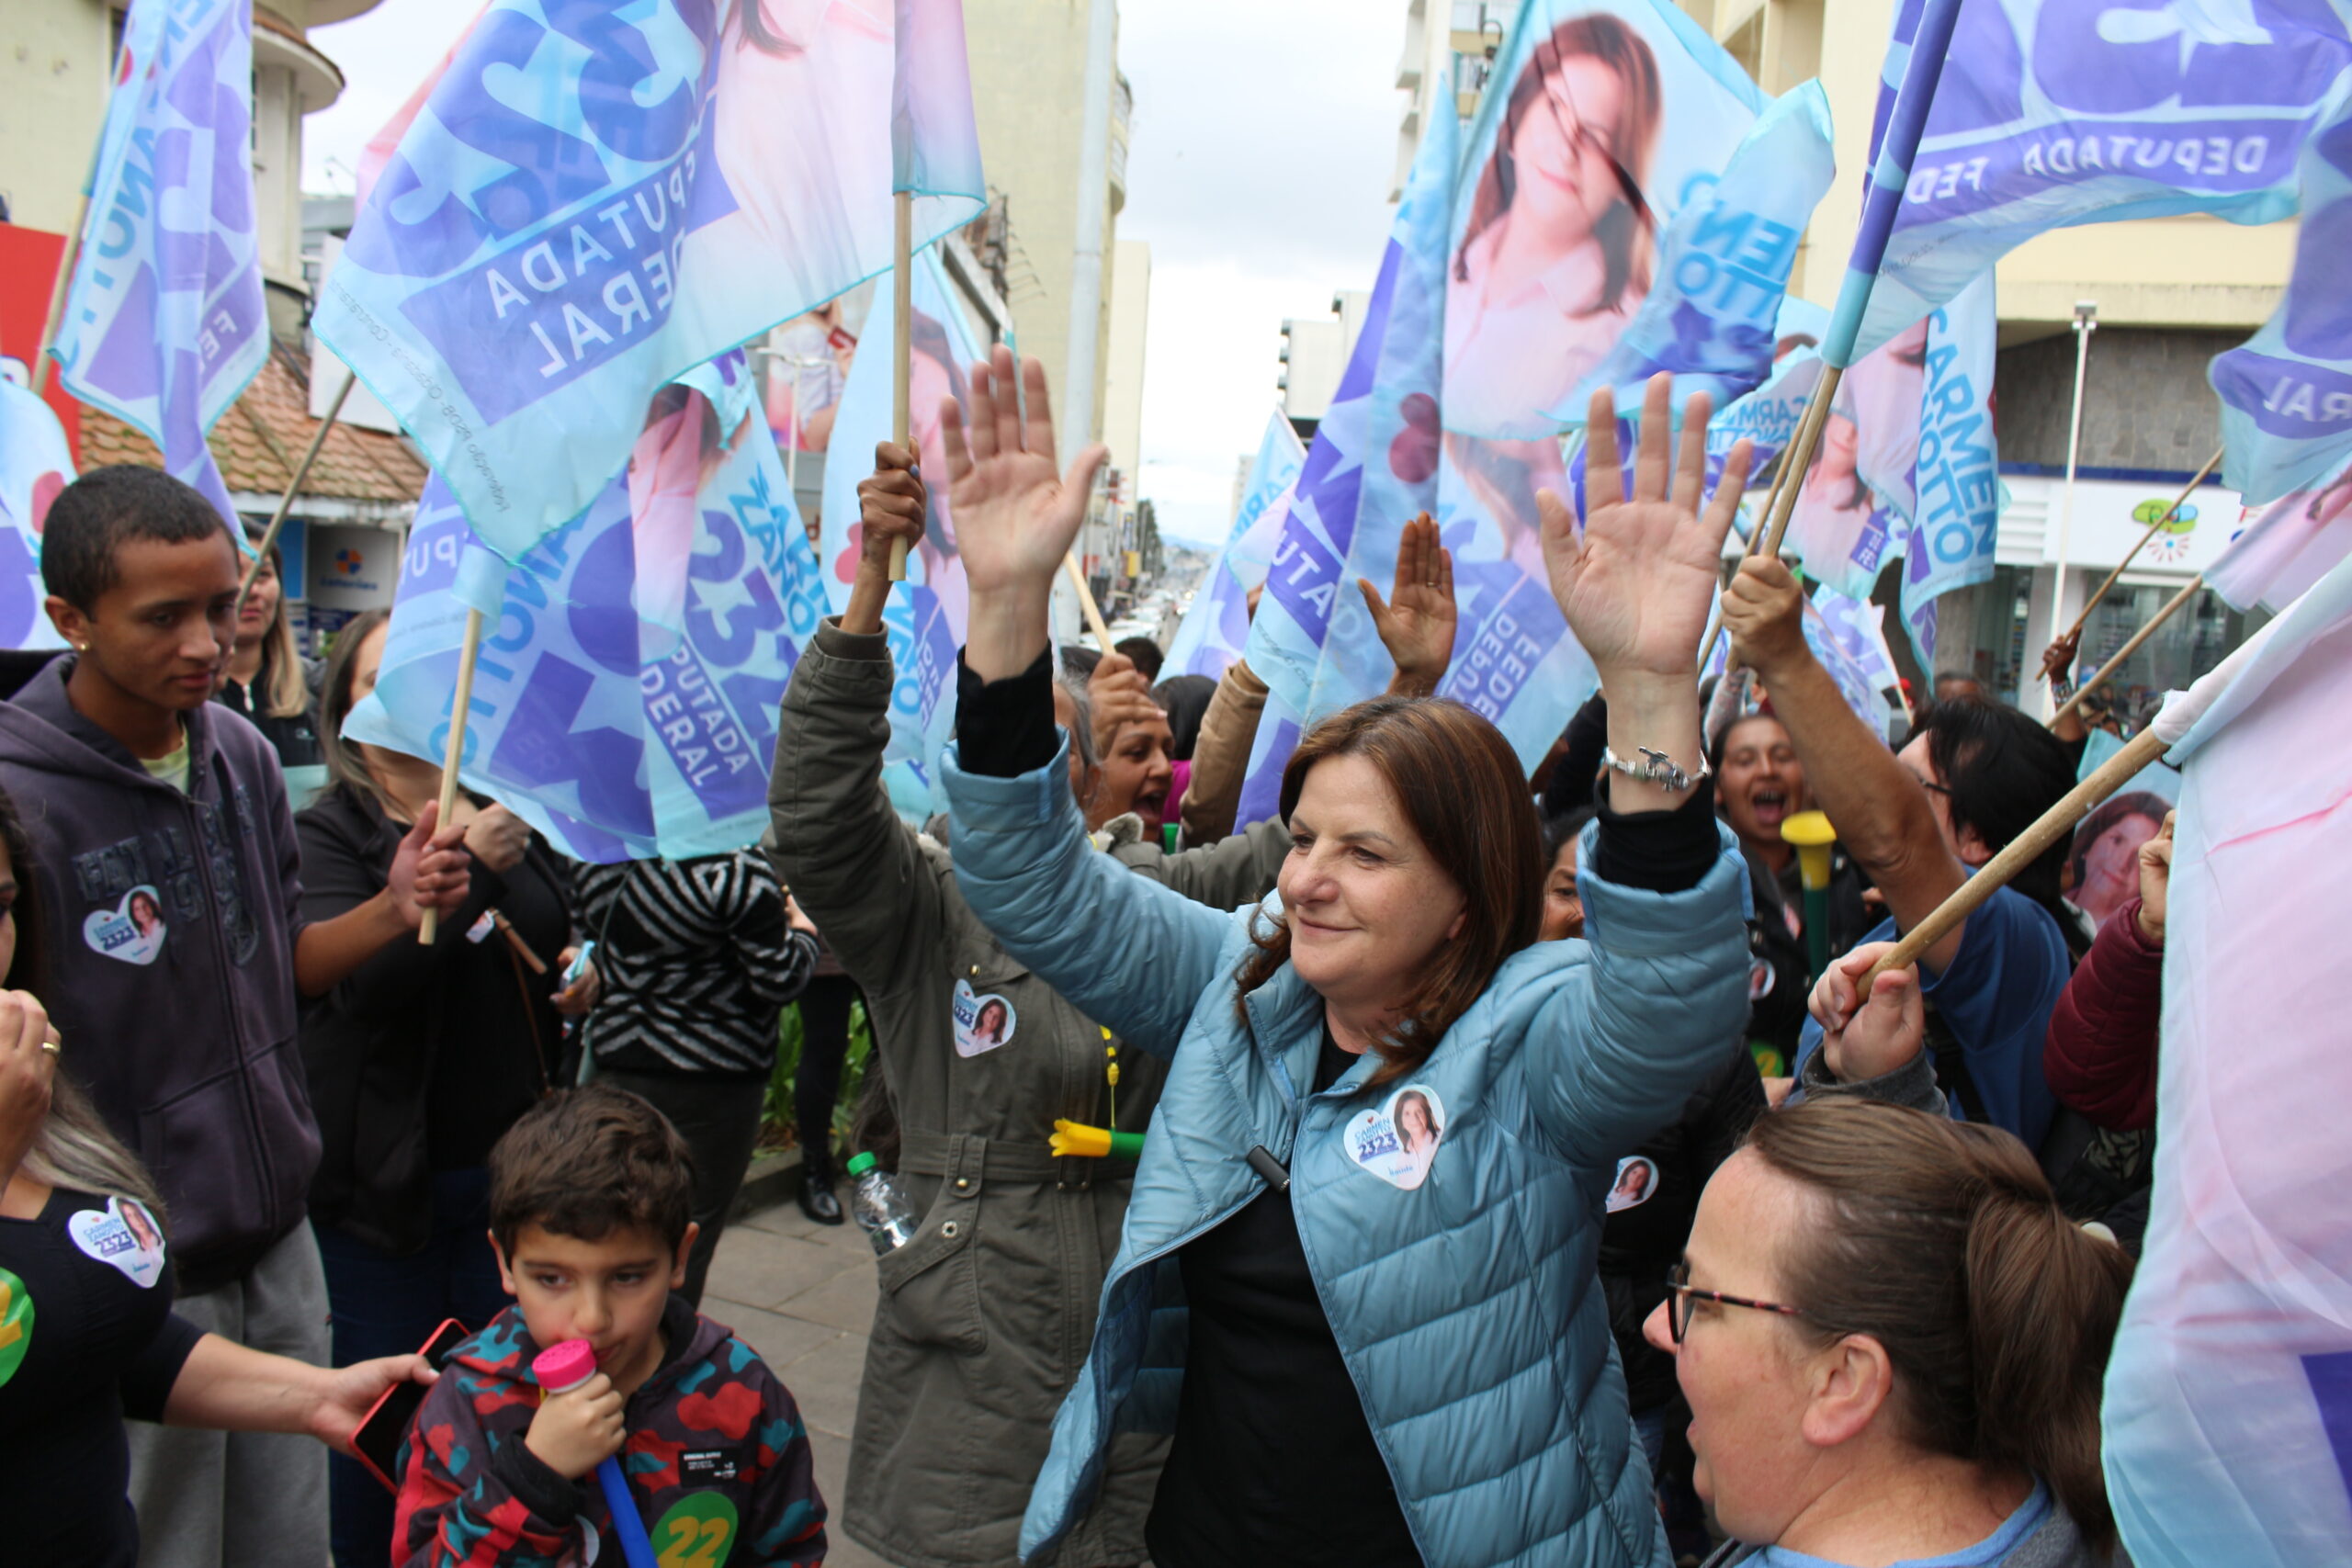 Carmen Zanotto encerra campanha em clima de alegria e confiança